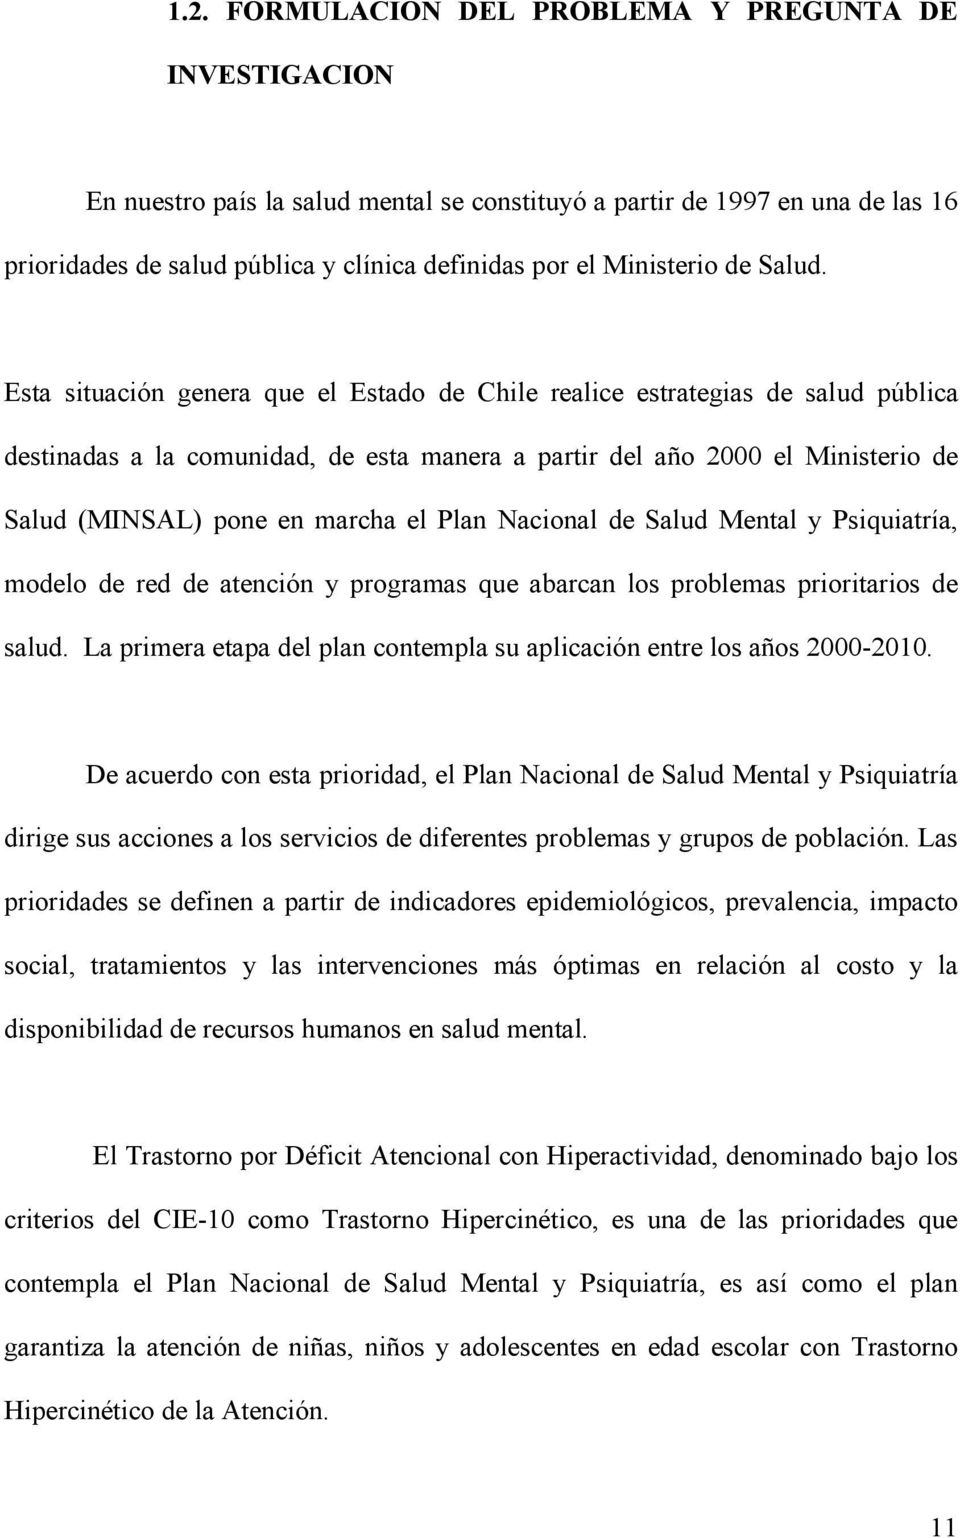 Esta situación genera que el Estado de Chile realice estrategias de salud pública destinadas a la comunidad, de esta manera a partir del año 2000 el Ministerio de Salud (MINSAL) pone en marcha el